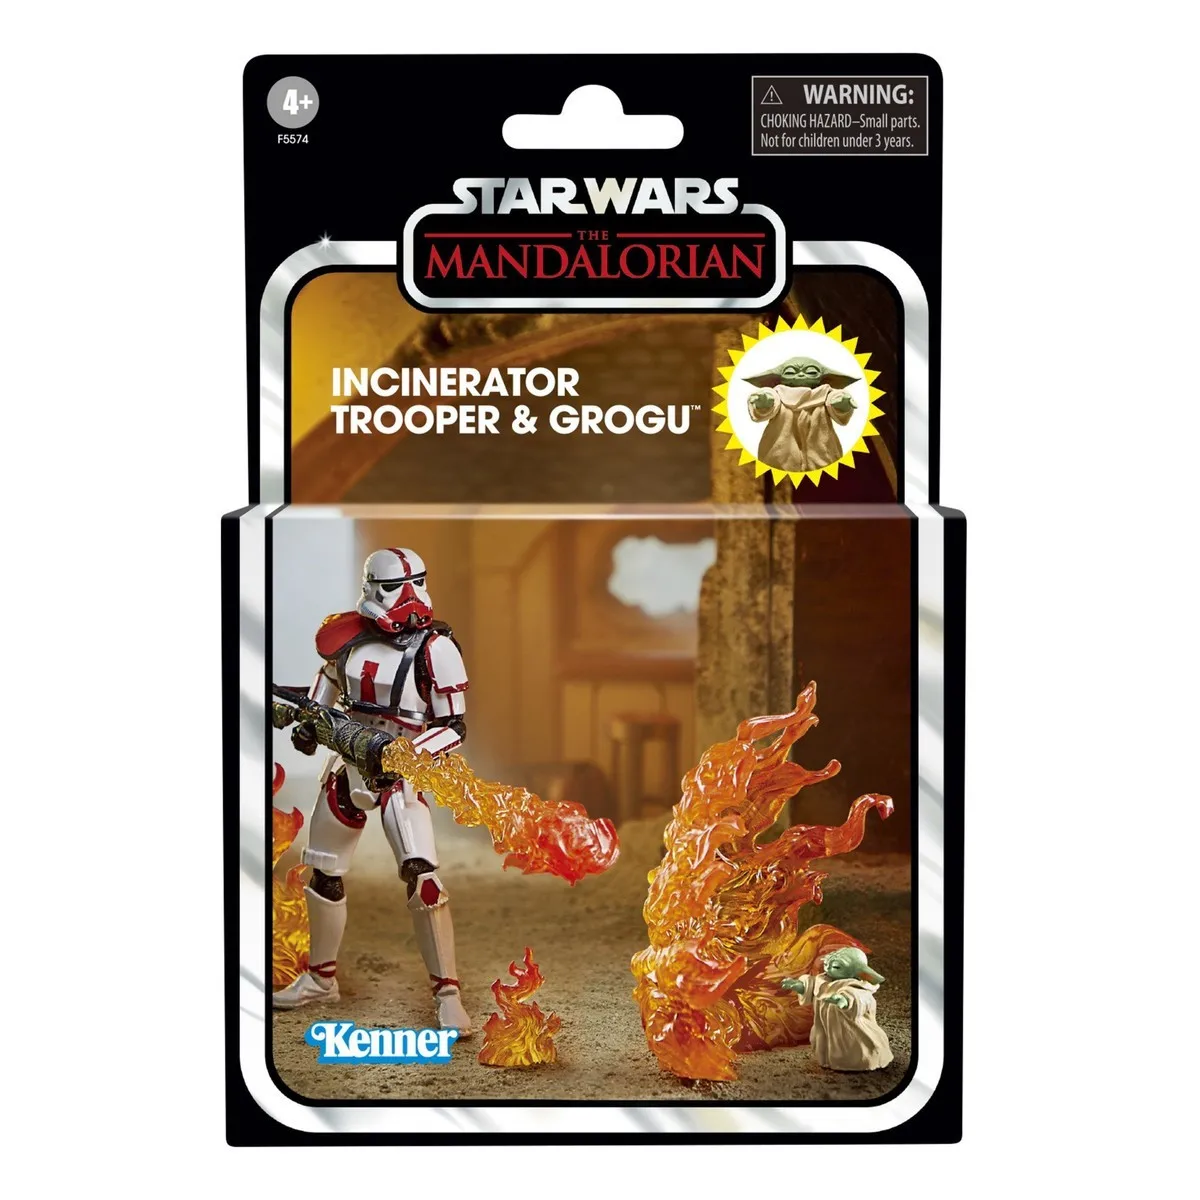 

Винтажная Коллекция Hasbro Star Wars, классические экшн-фигурки из фильма «Звездные войны» 3,75 дюйма, модель игрушки